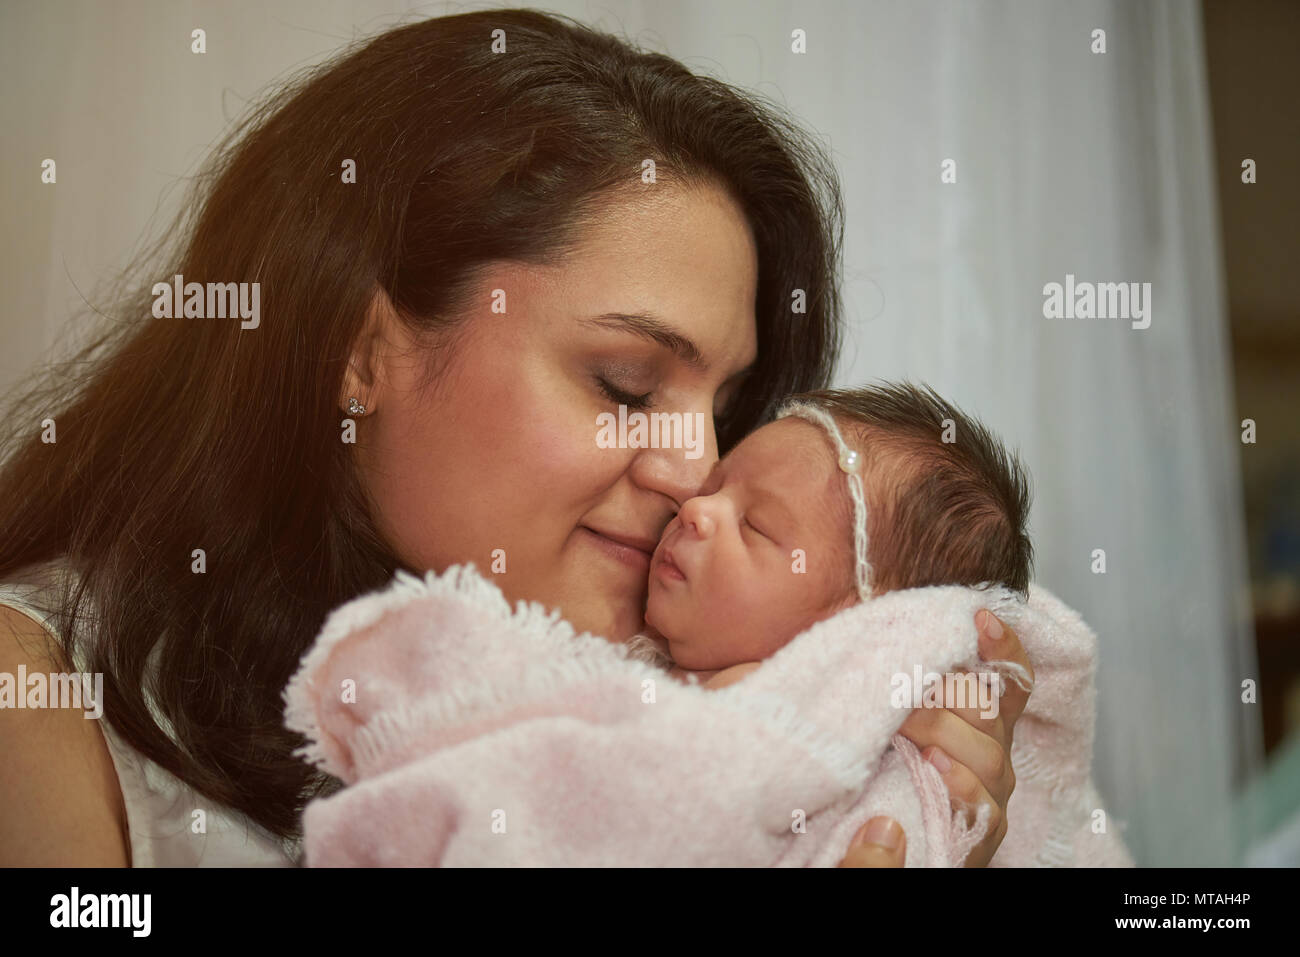 Latina mom hugging newborn baby close up view Stock Photo